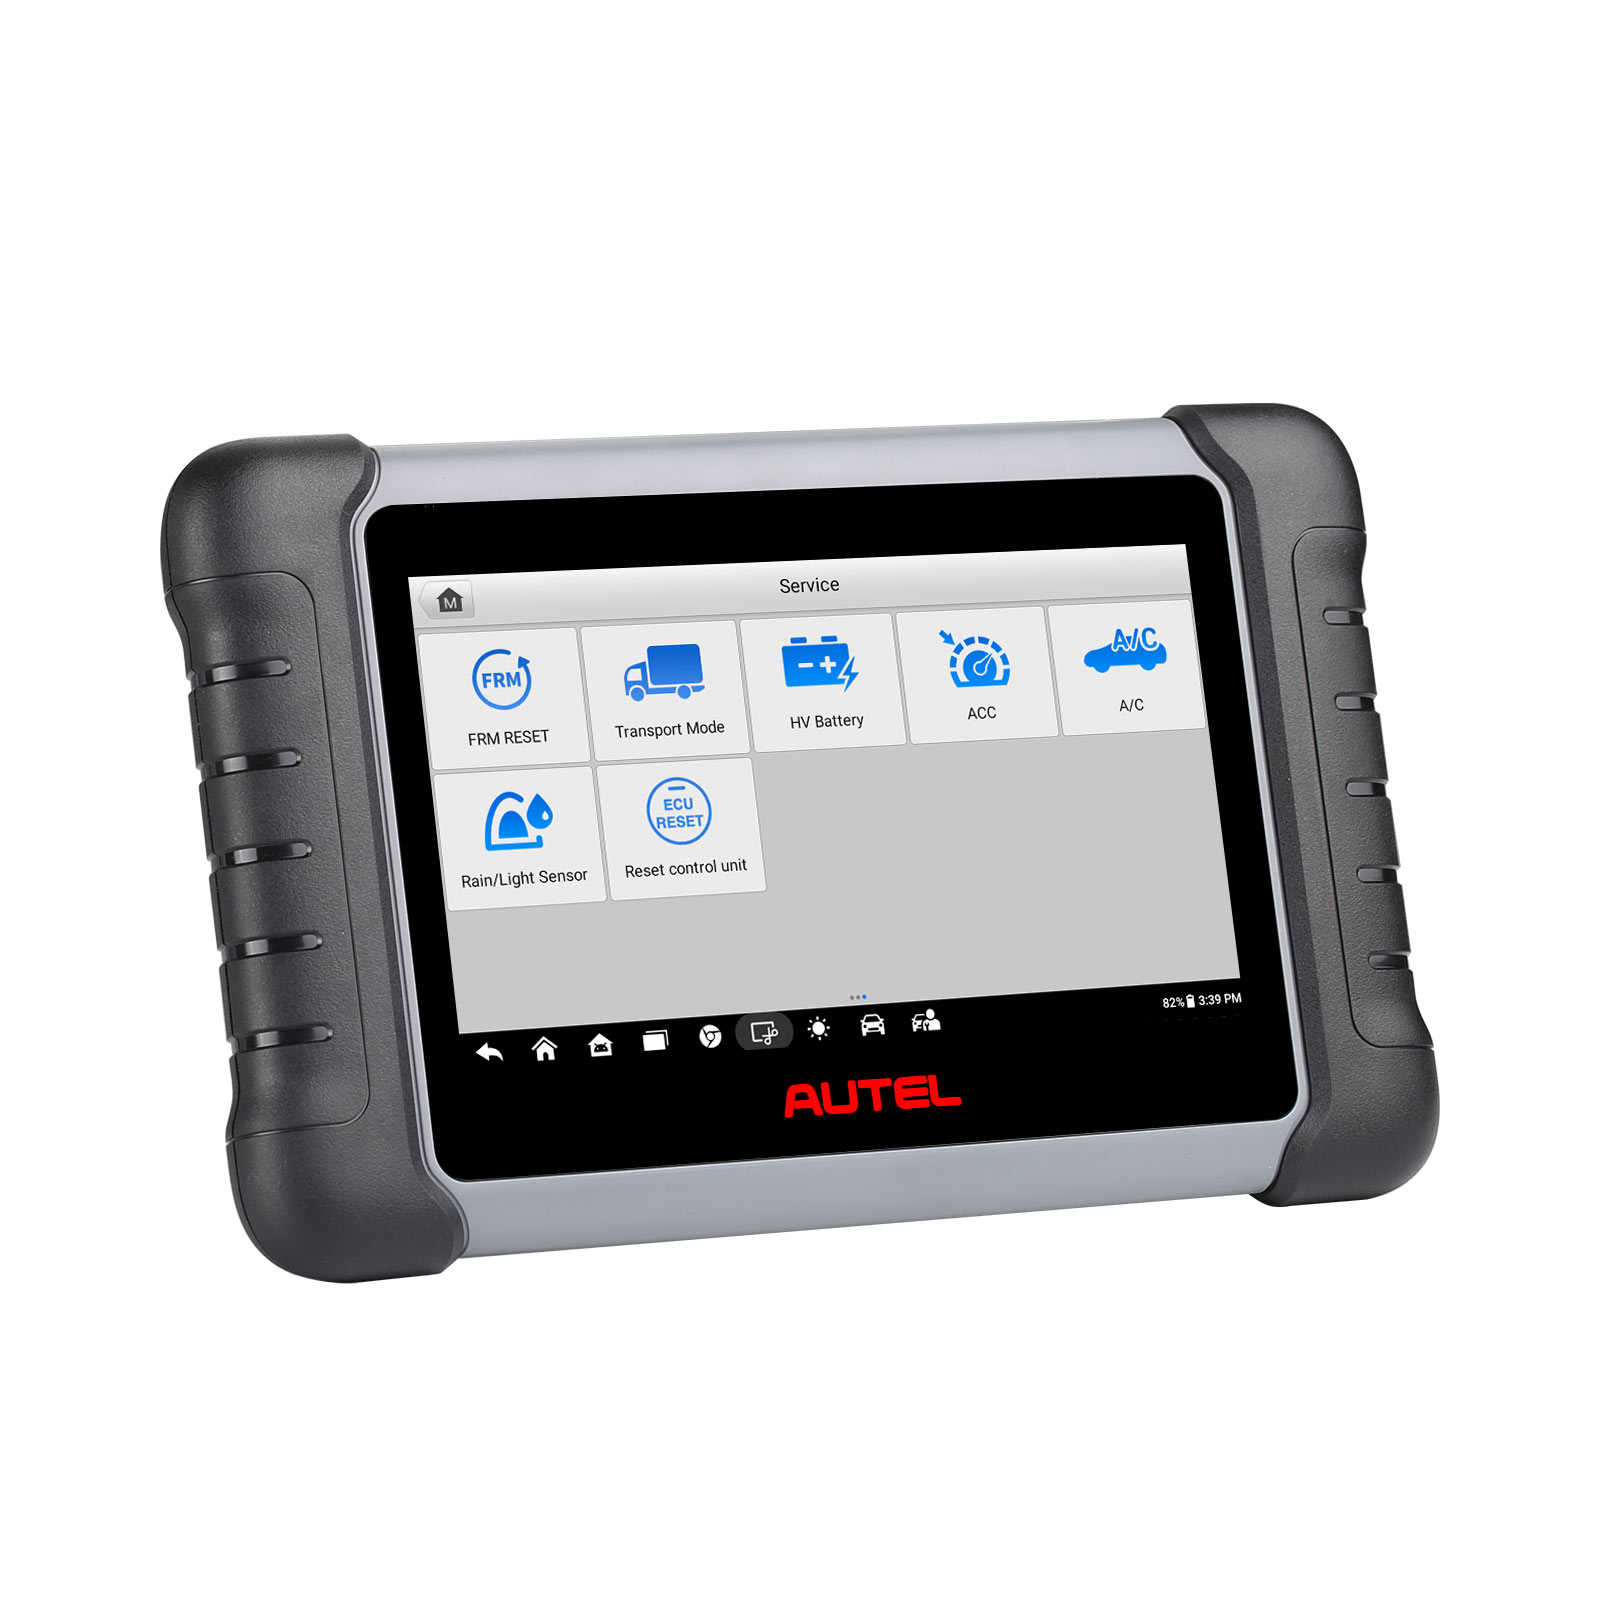 Autel MaxiPRO MP808TS Valise Diagnostic Auto OBD2 Scanner avec